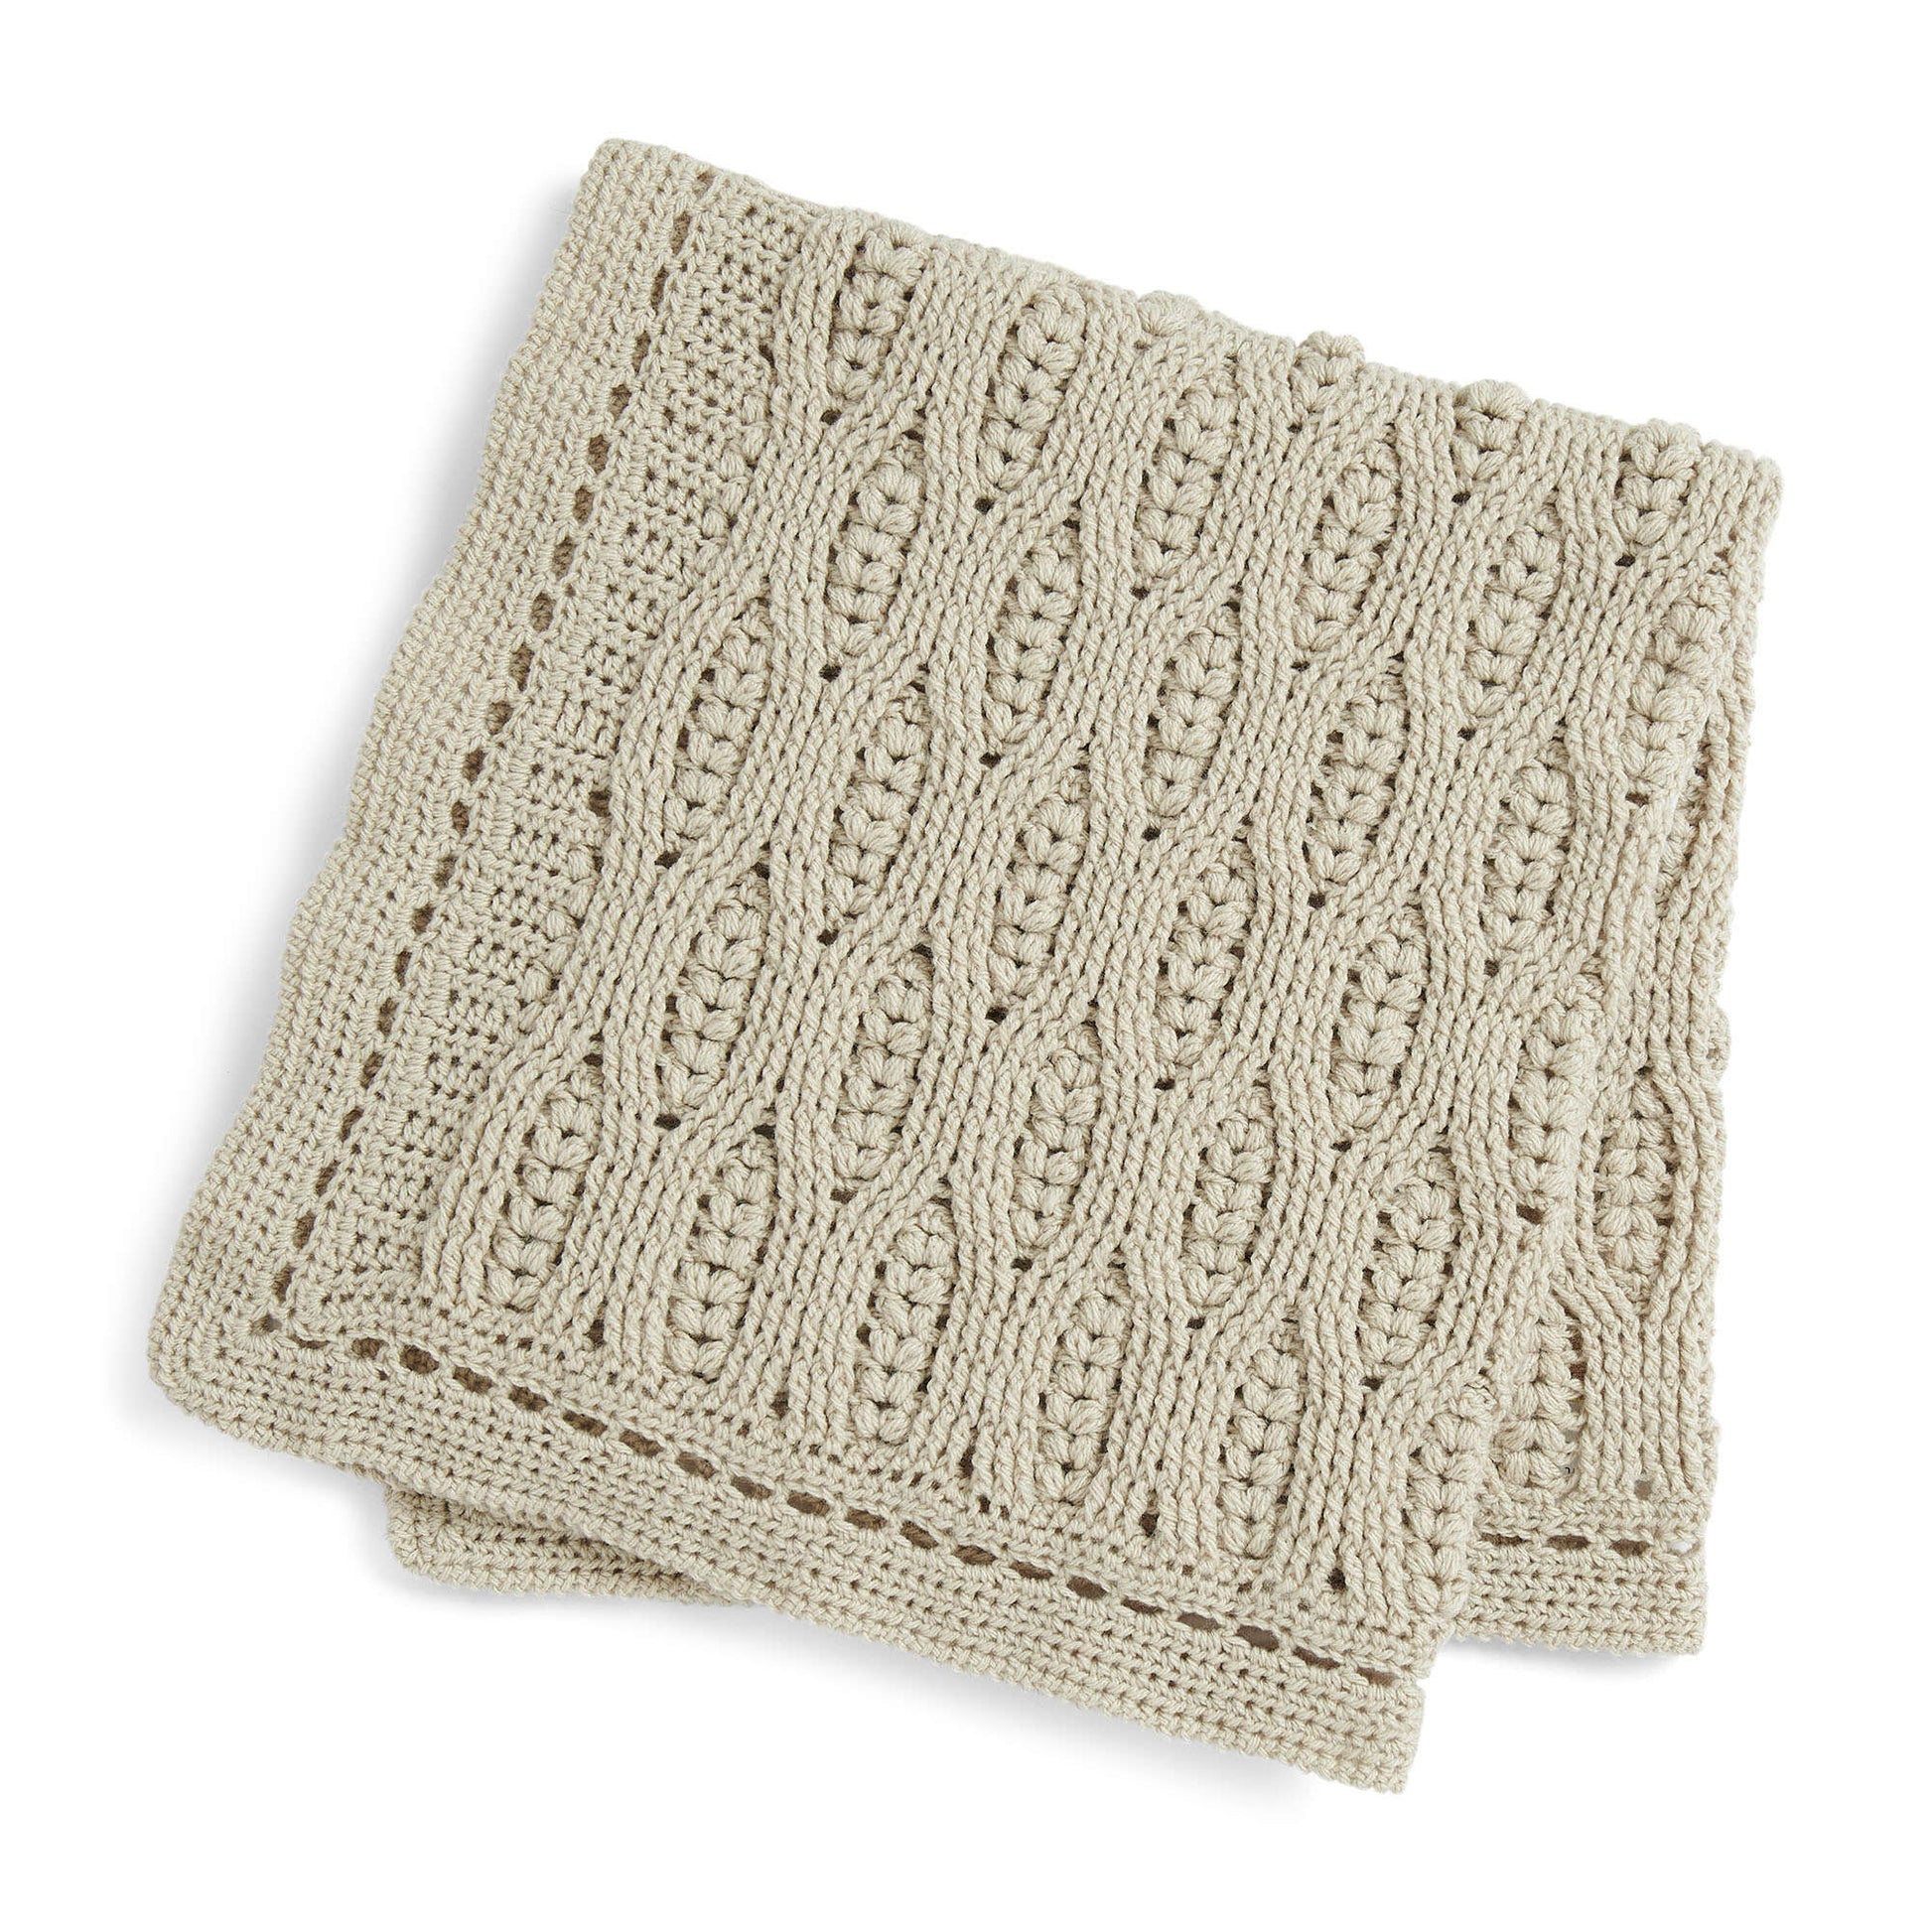 Free Bernat Misty Vines Crochet Baby Blanket Pattern